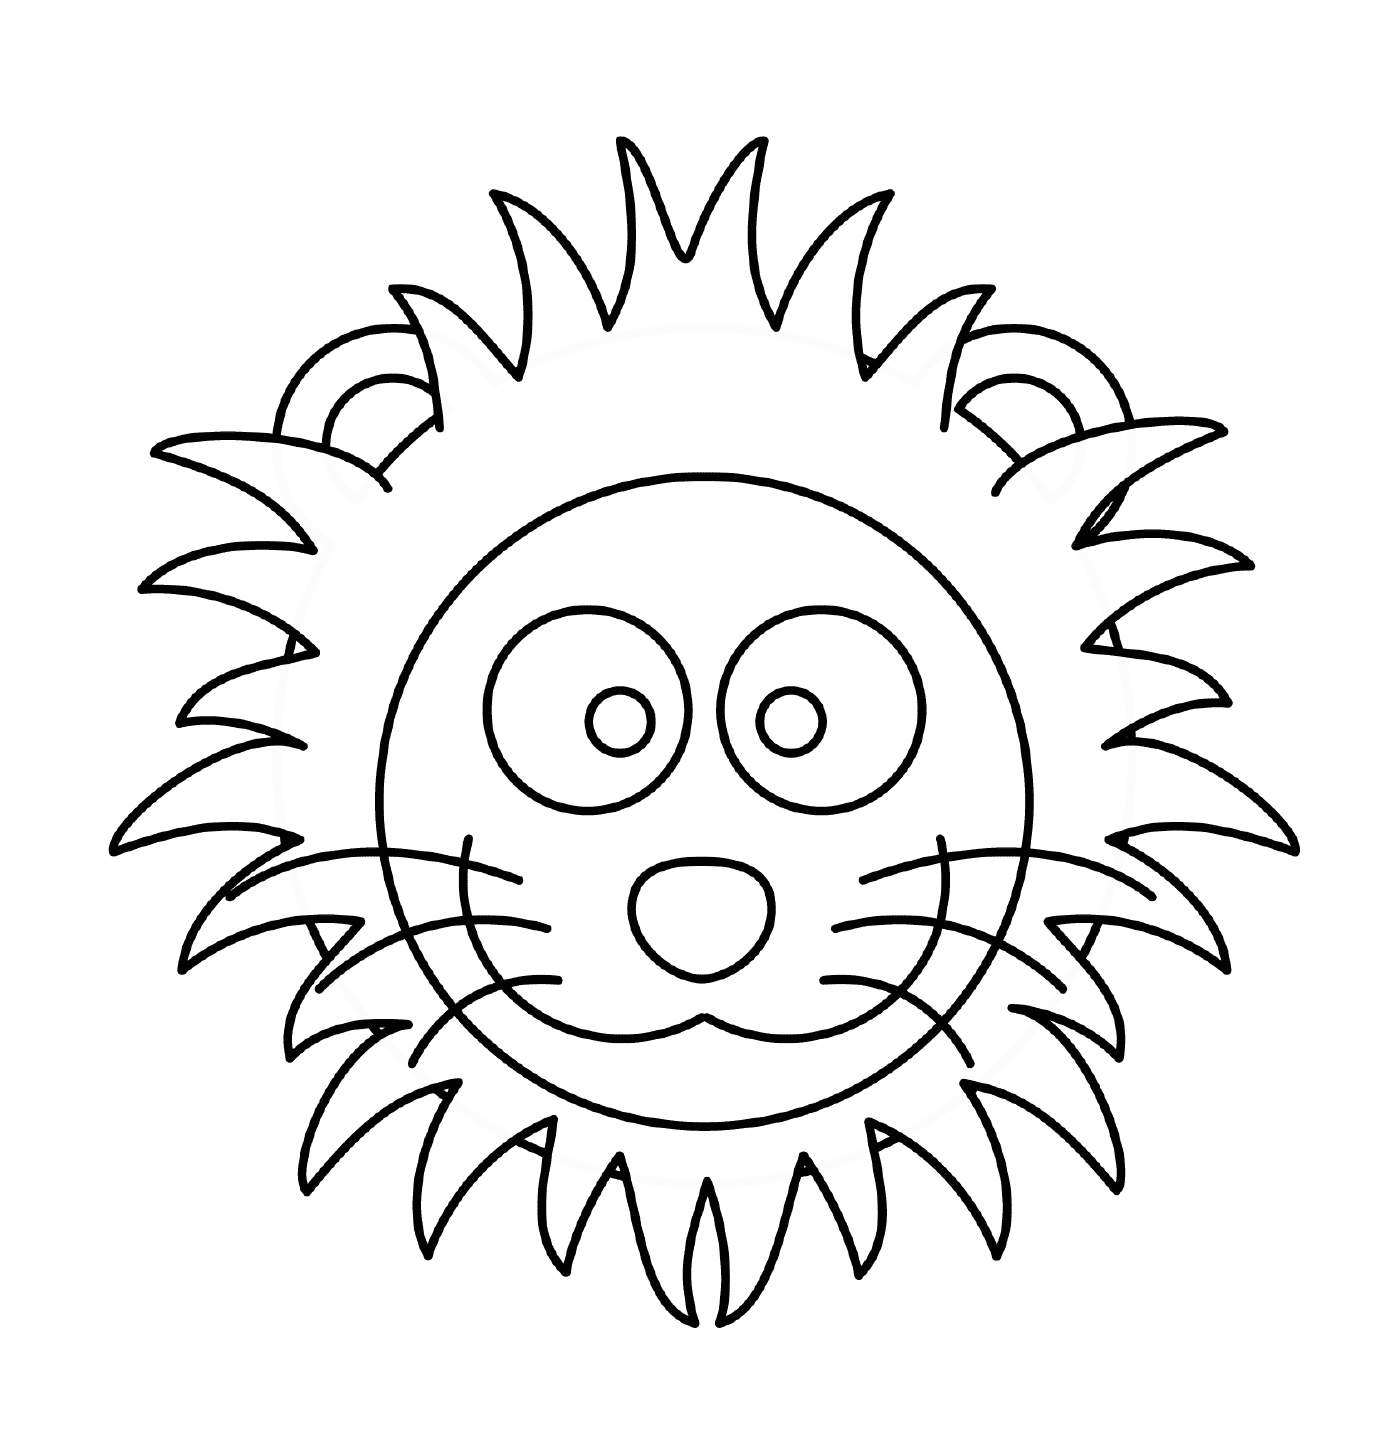  Lion's head in cartoon 